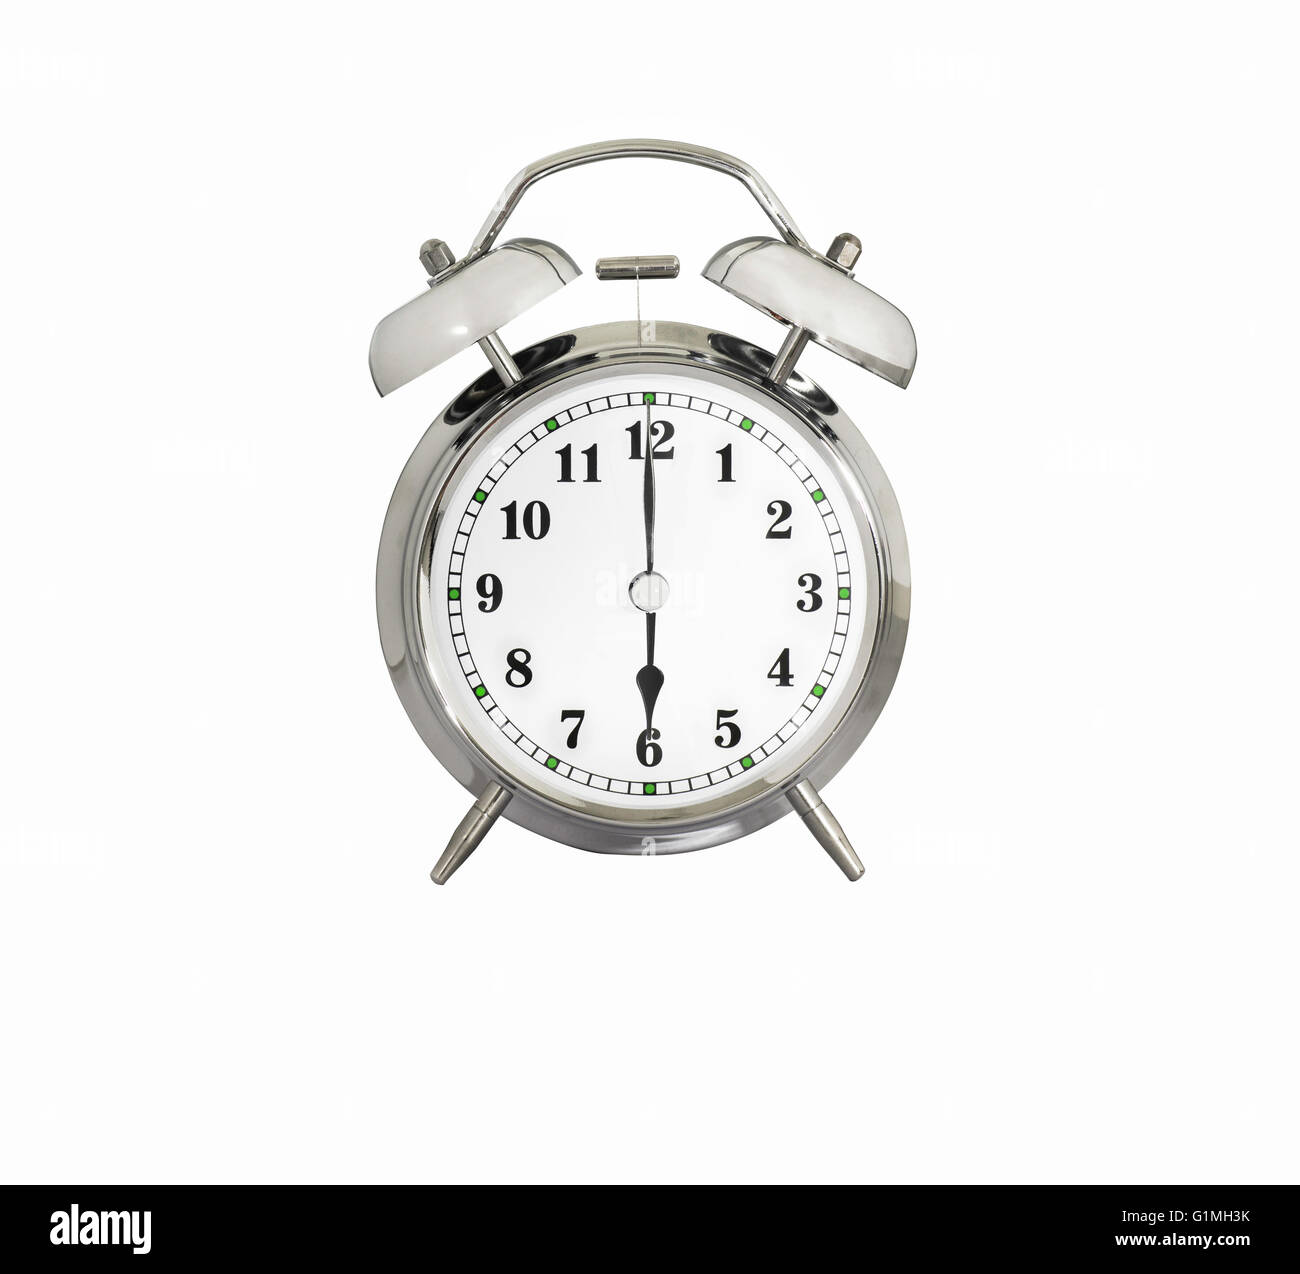 Alarm clock 6 am Banque de photographies et d'images à haute résolution -  Alamy